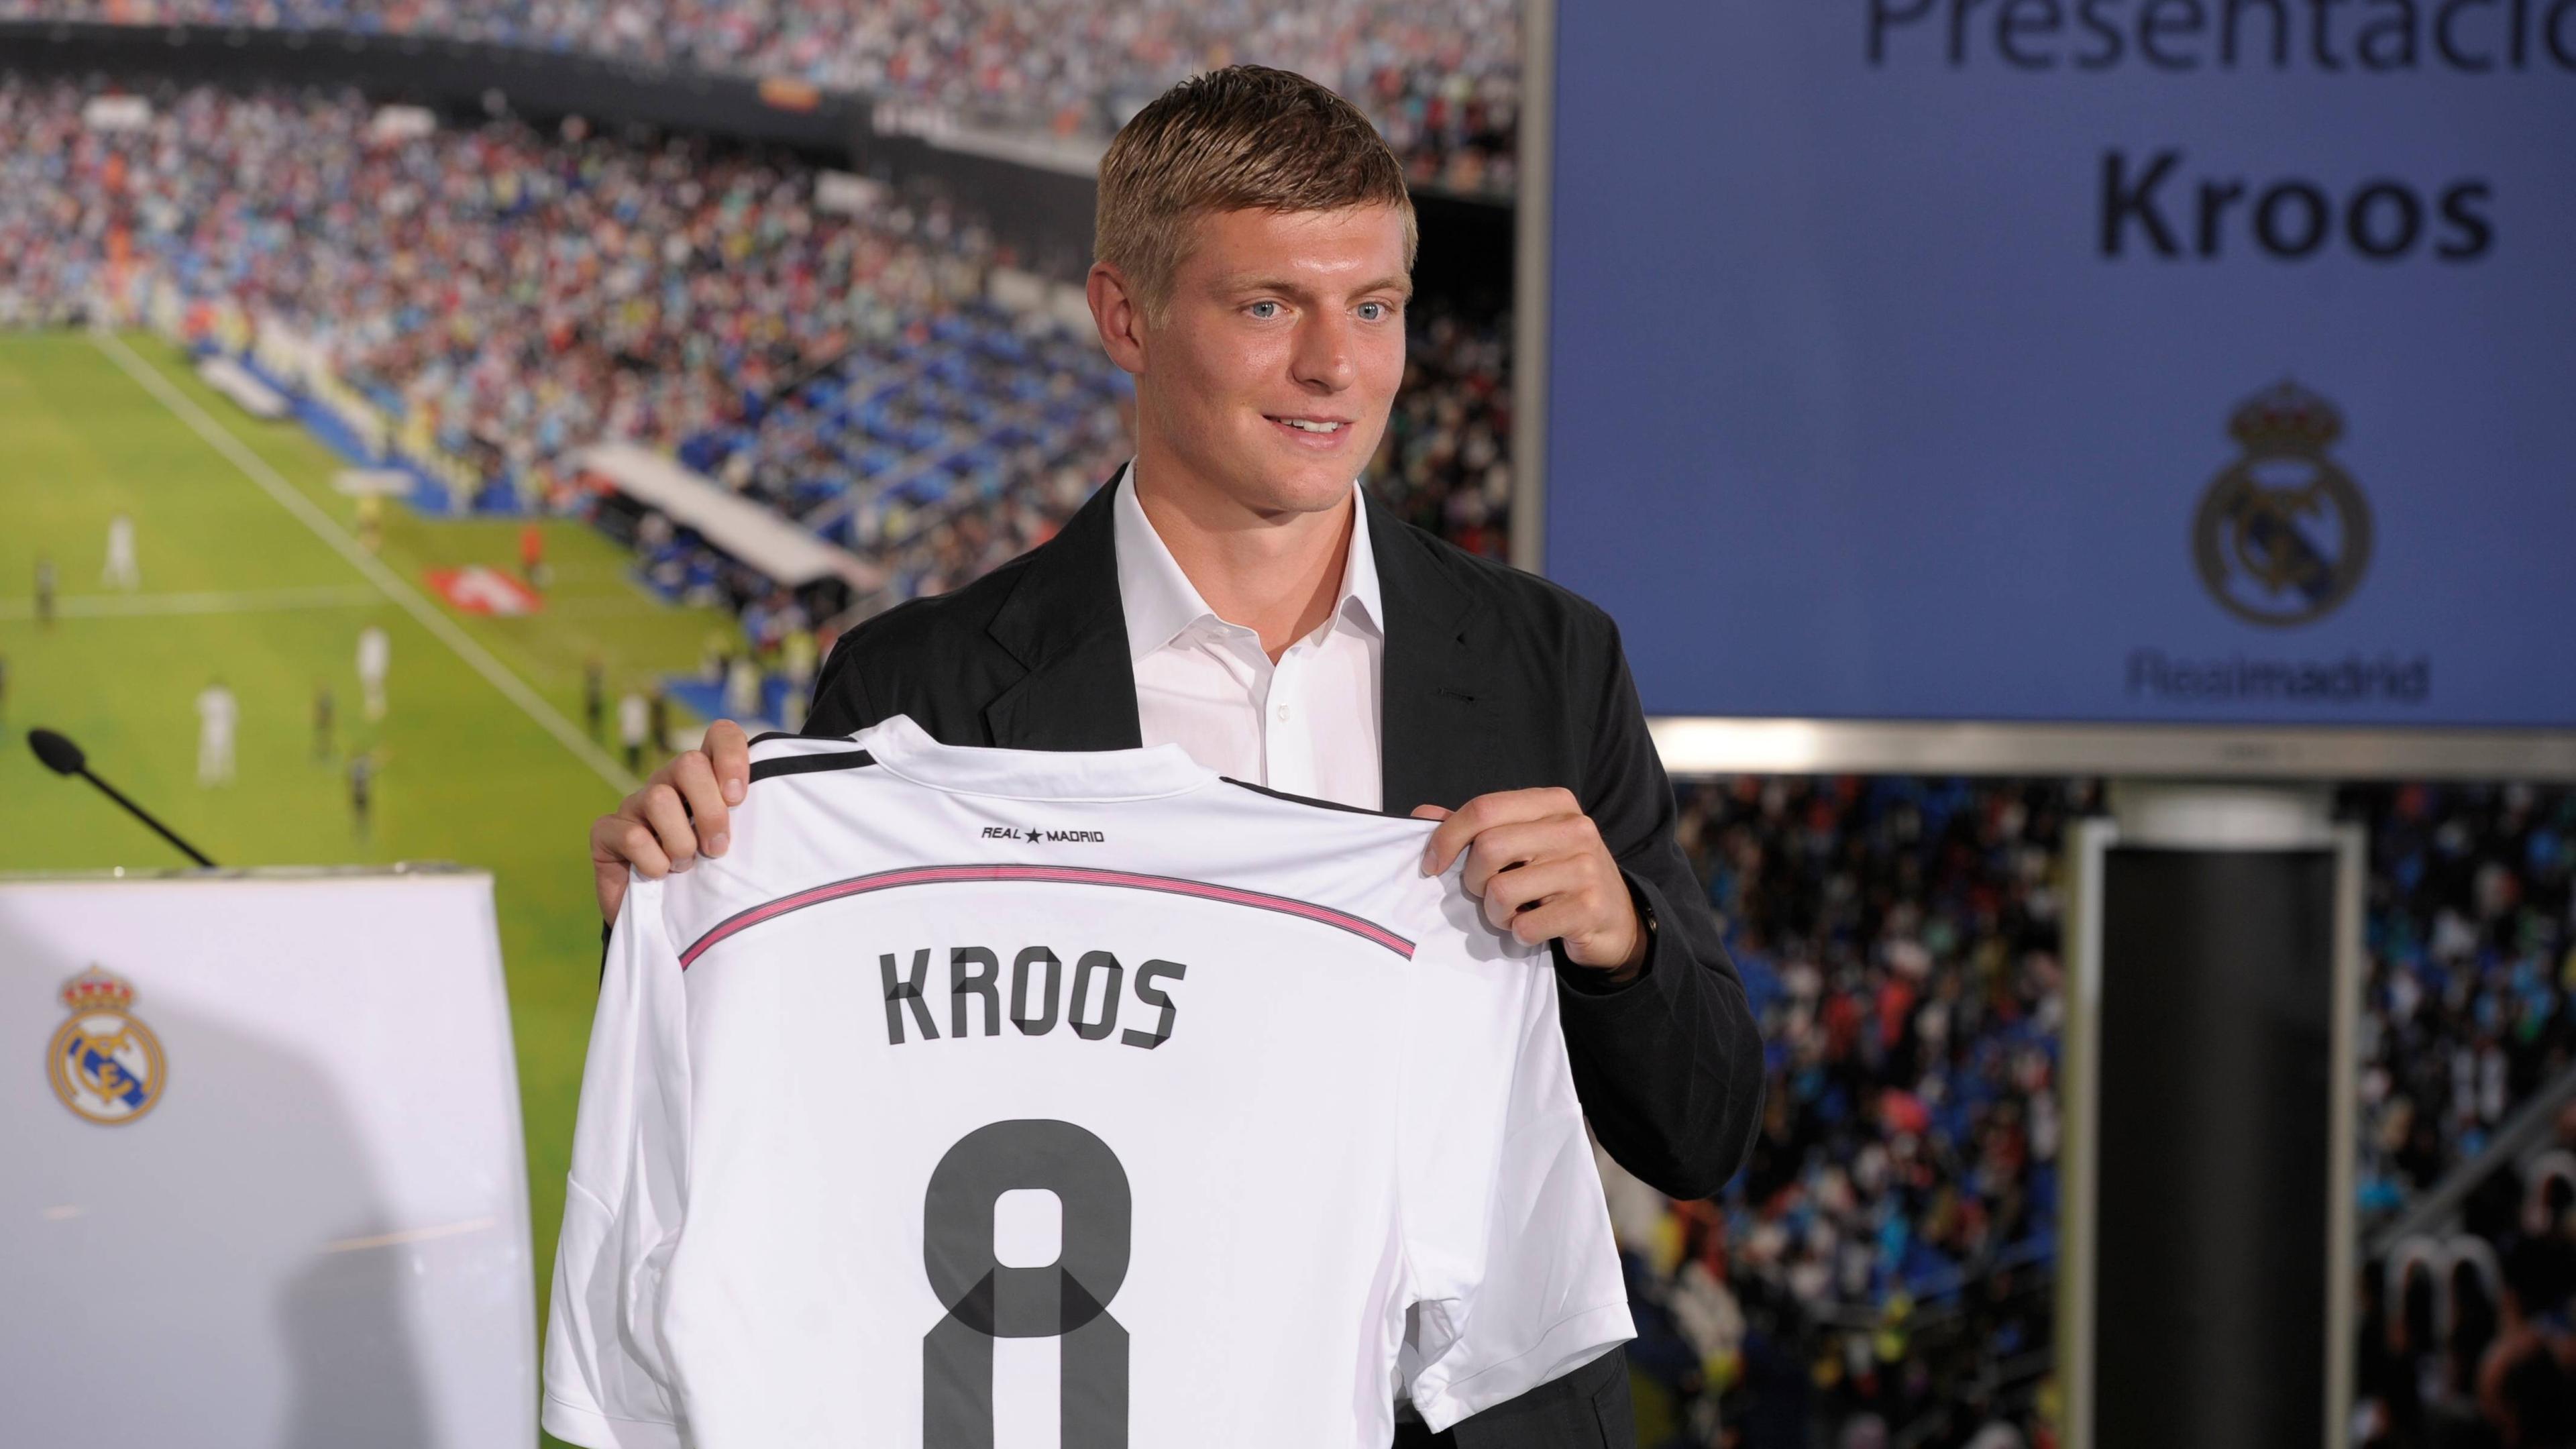 nach der WM wechselt Kroos zu Real Madrid.